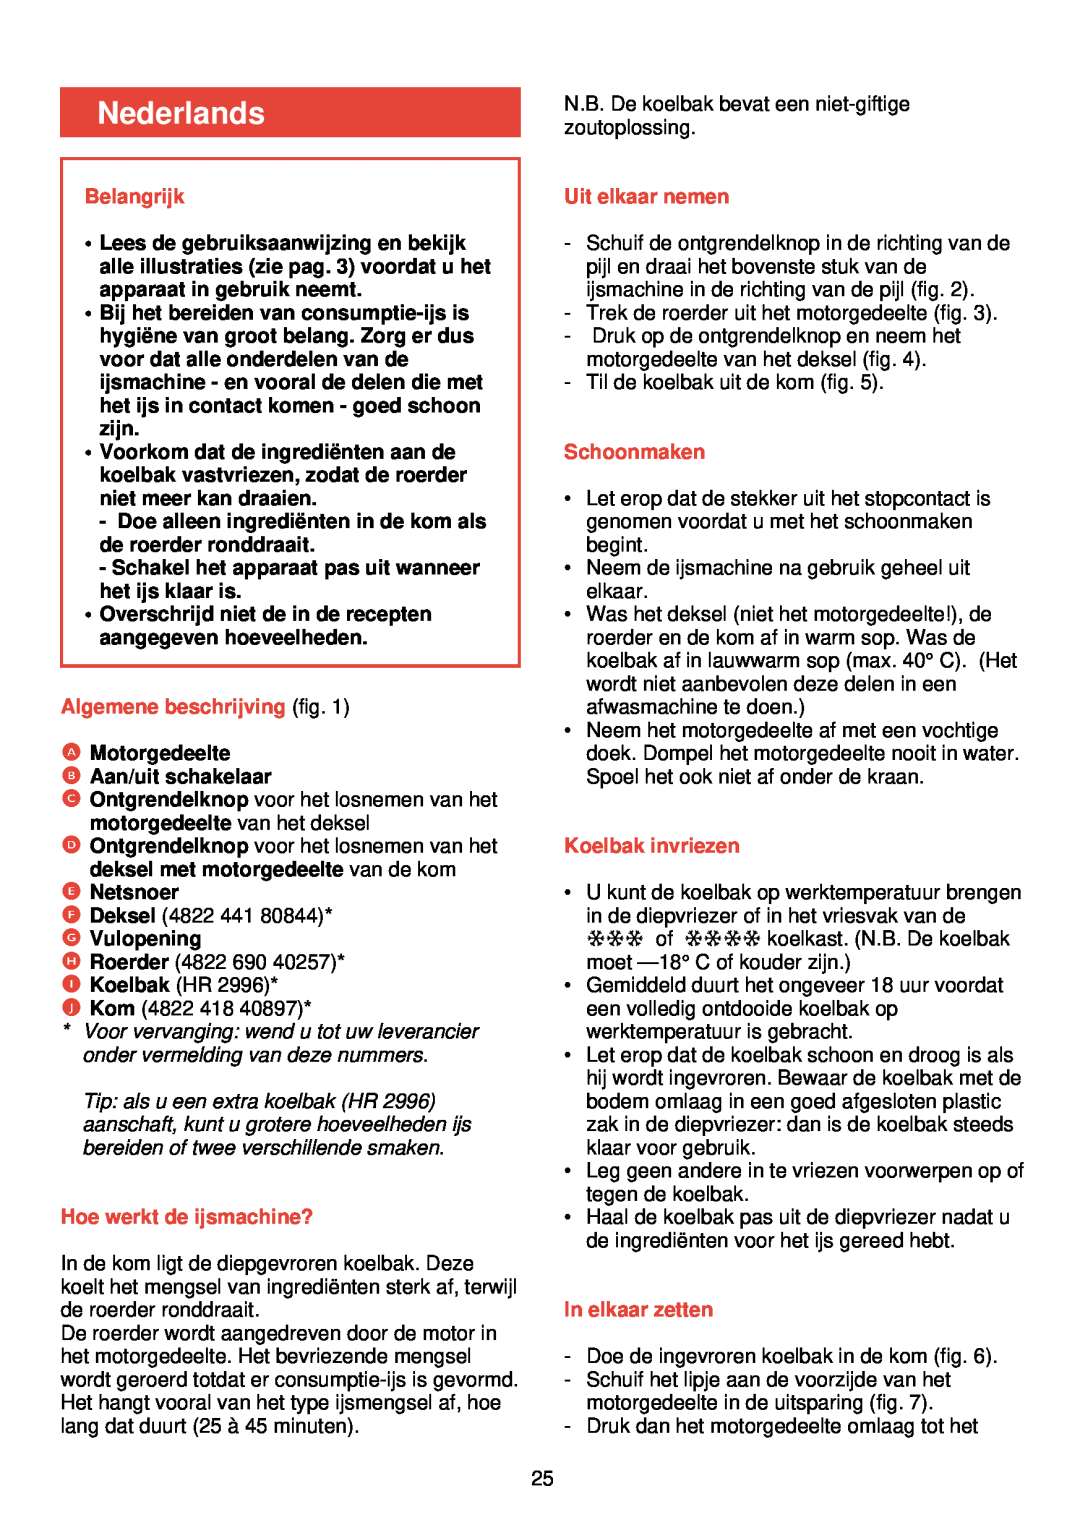 Philips HR 2300 manual Nederlands, Belangrijk, Doe alleen ingredië nten in de kom als de roerder ronddraait, E Netsnoer 